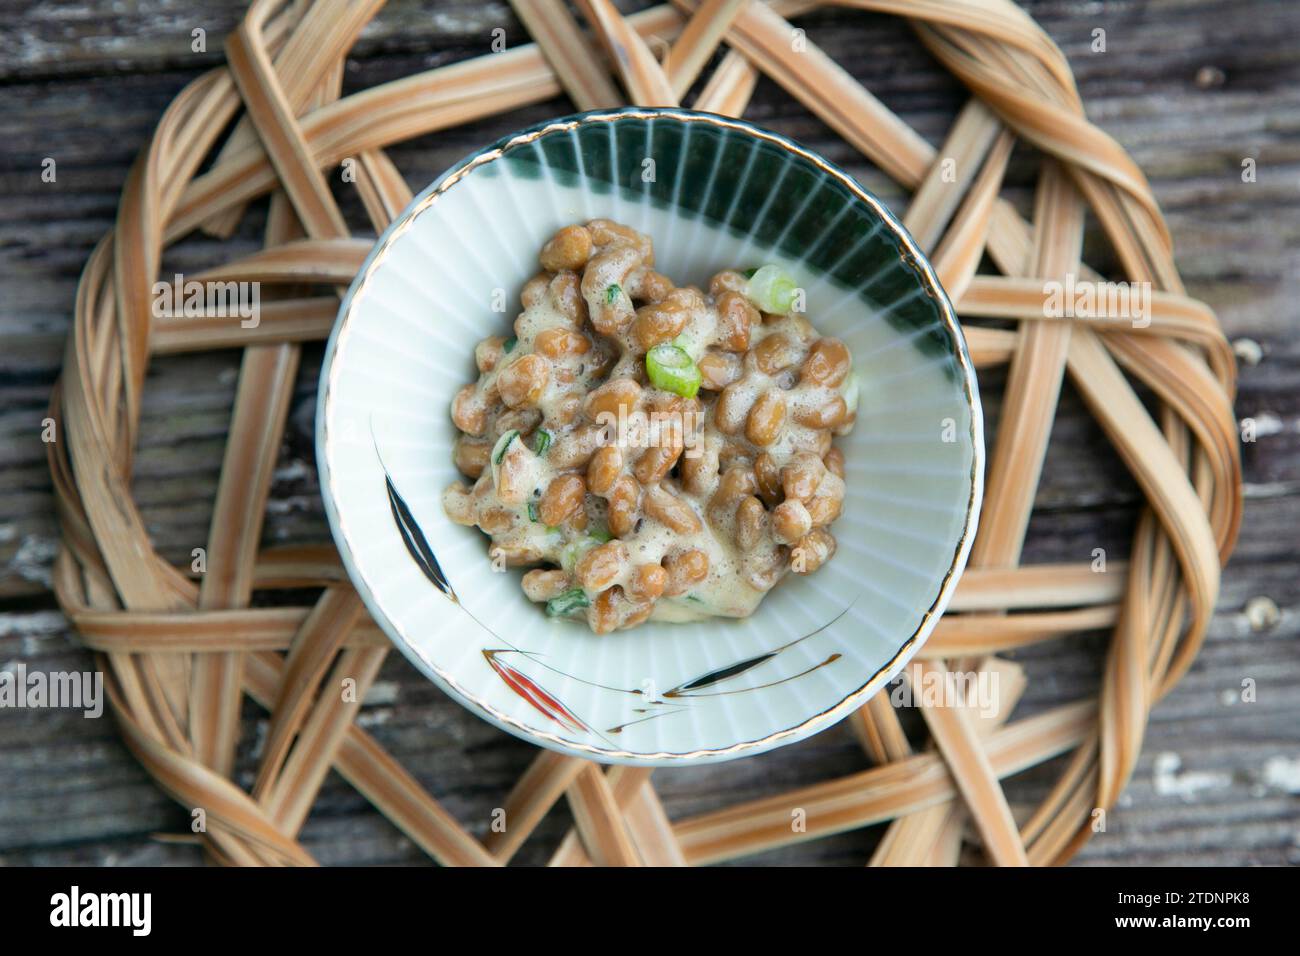 Nattō, nato ou hiragana est un aliment traditionnel japonais à base de soja fermenté.aliment traditionnel japonais à base de soja fermenté. Banque D'Images